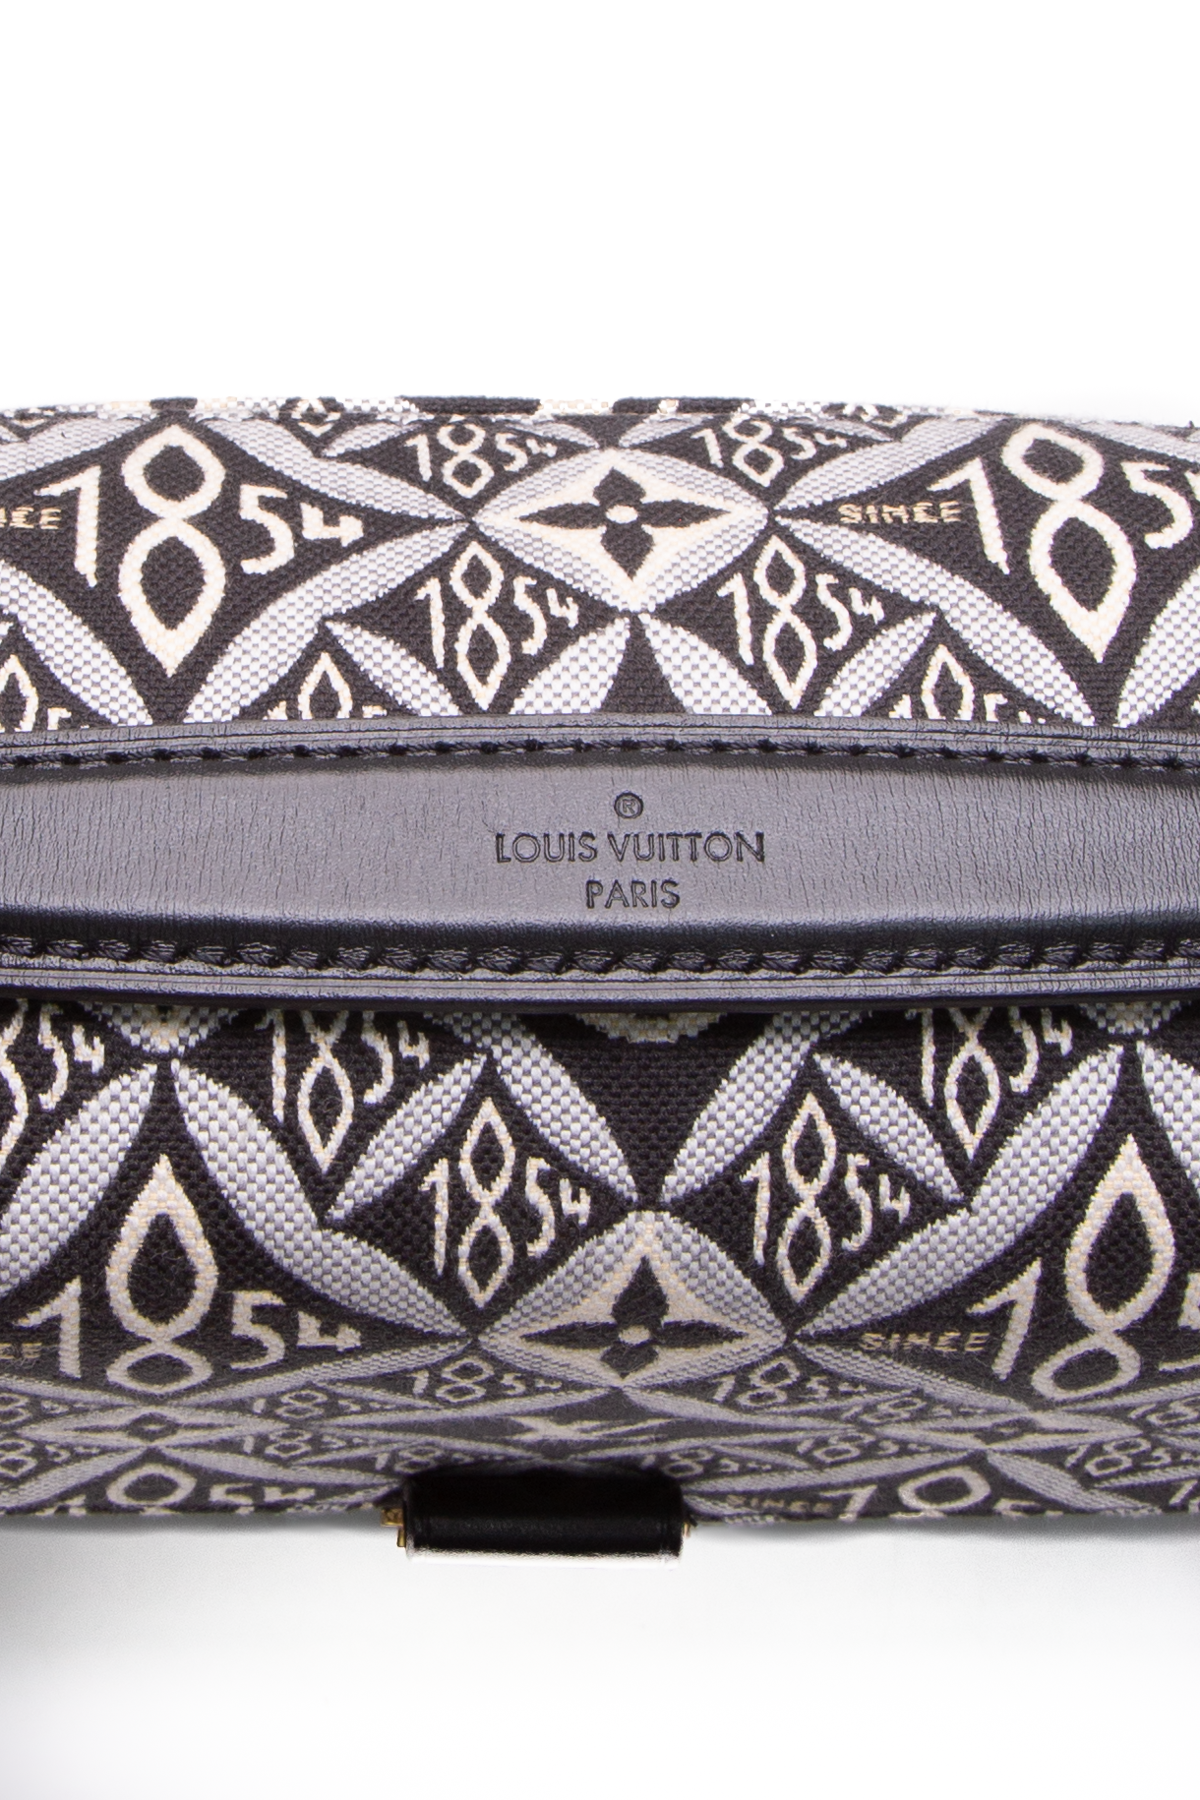 Louis Vuitton Since 1854 Pochette Metis Bag